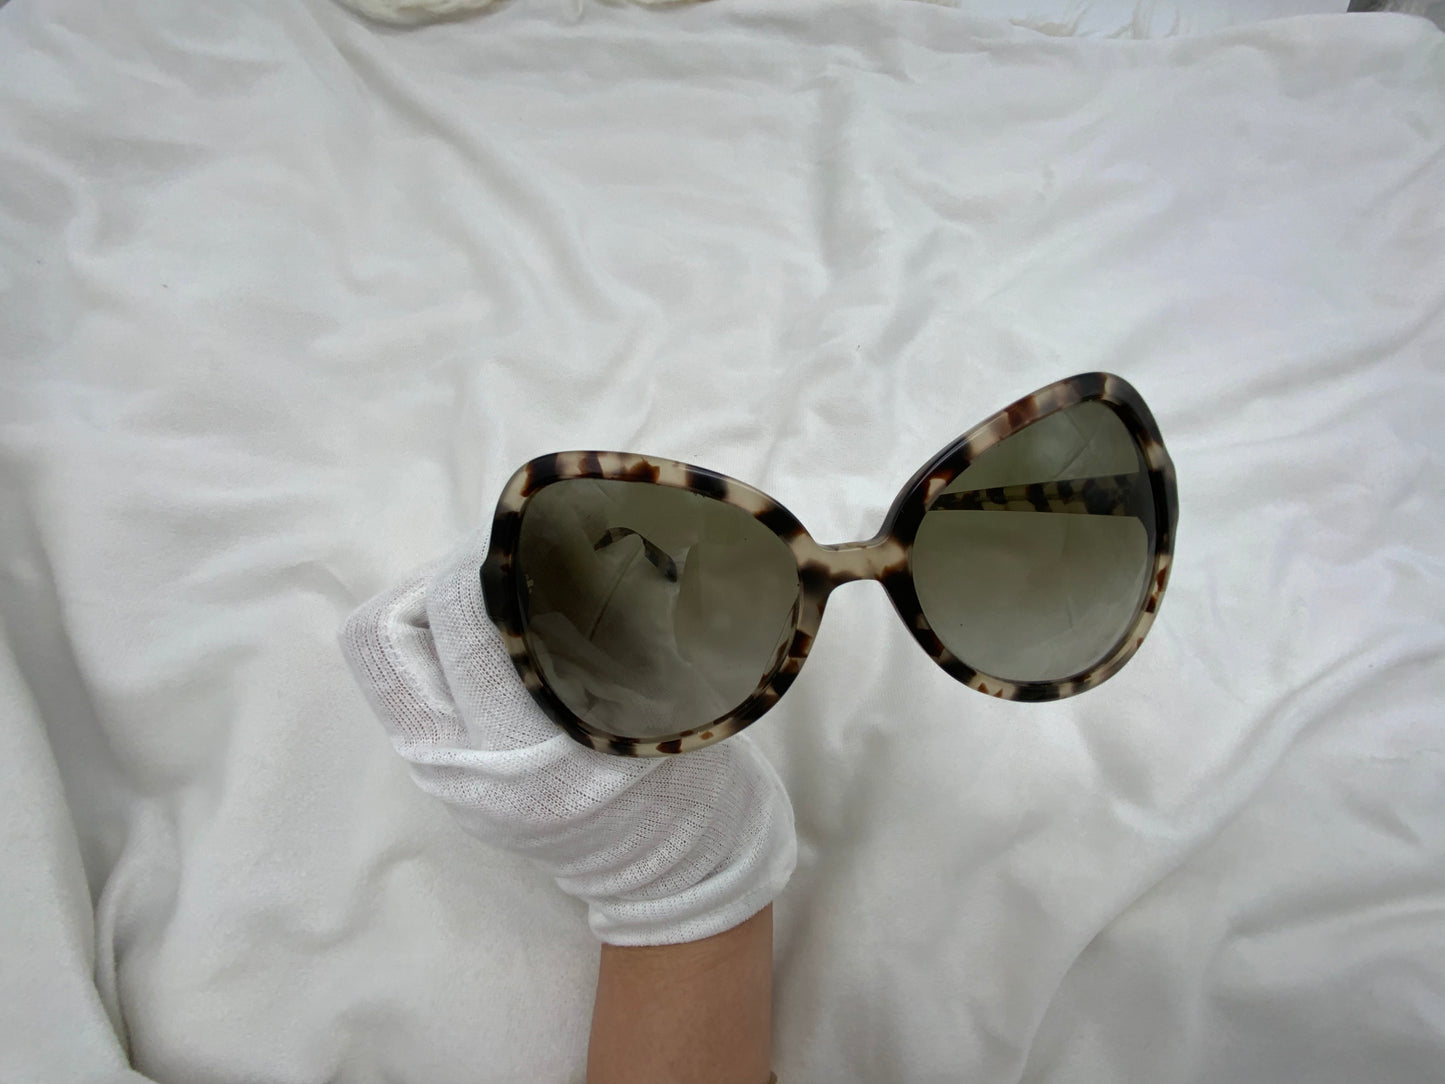 Prada Oversize Sunglasses